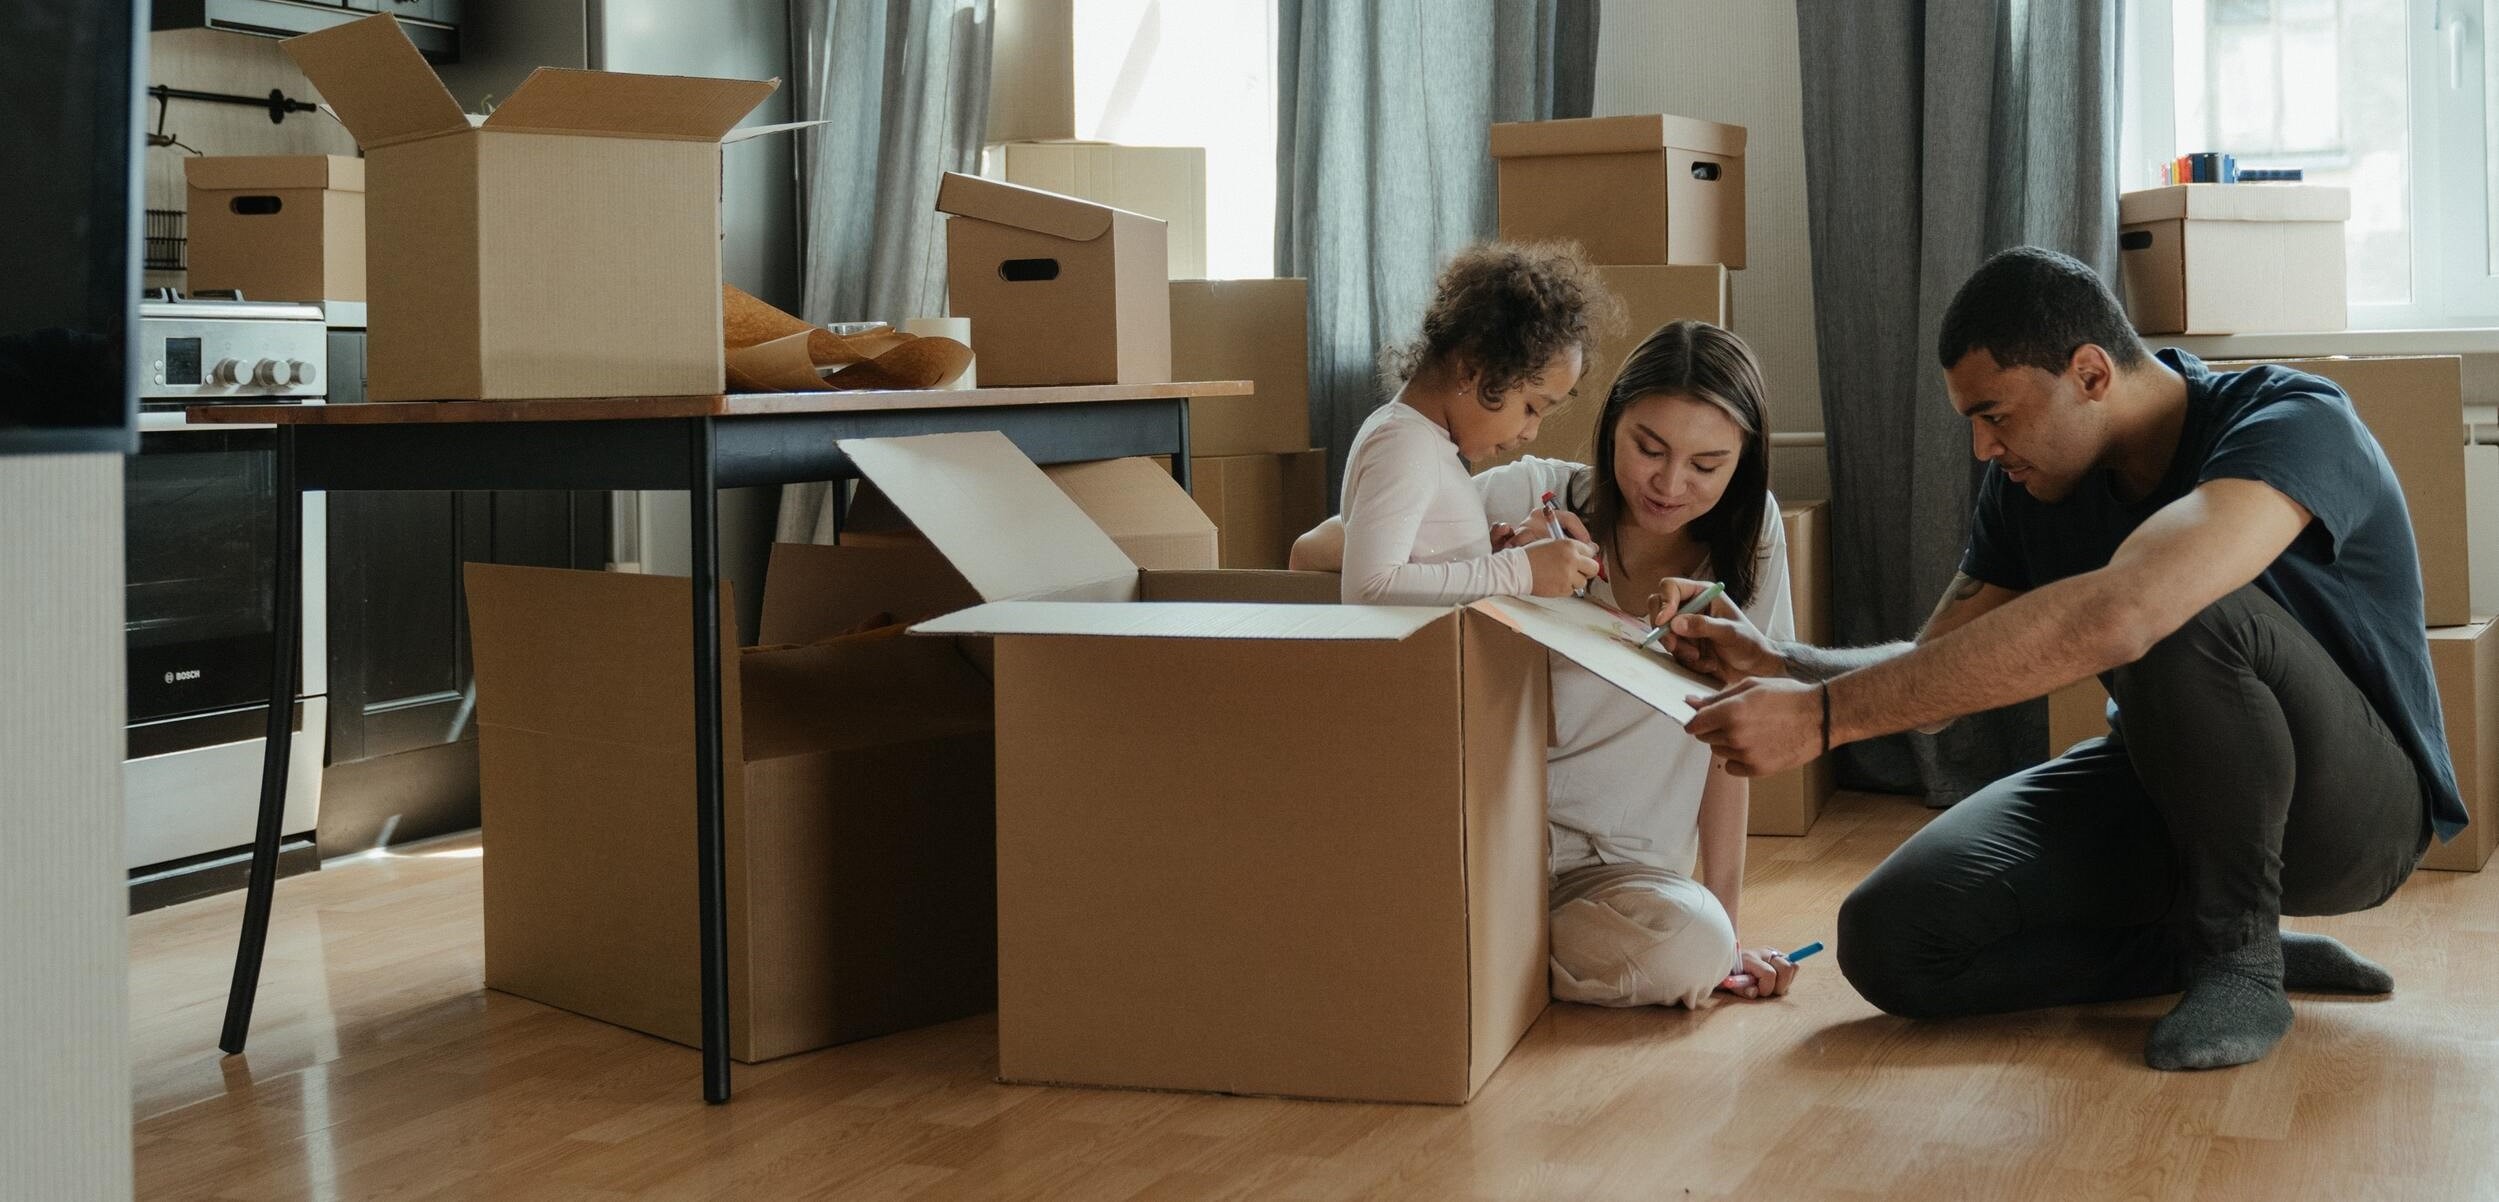 Les membres d'une famille emballant leurs affaires pour limiter les coûts d'un déménagement